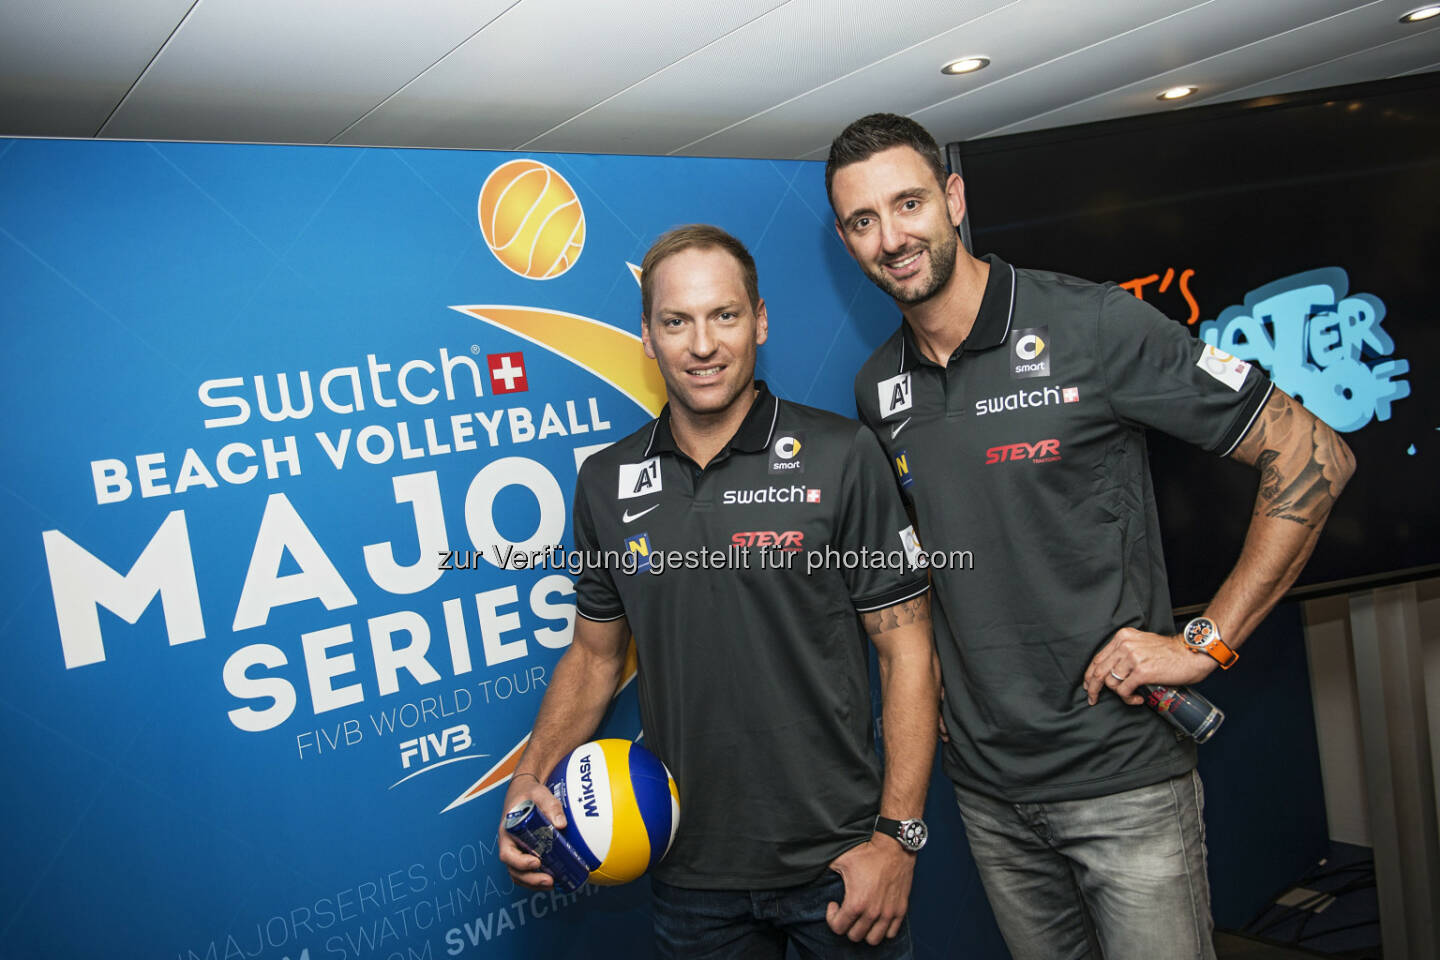 Alex Horst and Clemens Doppler: Swatch Beach Volleyball Major Series: Beach Volleyball setzt für globale Expansion auf neue Partner